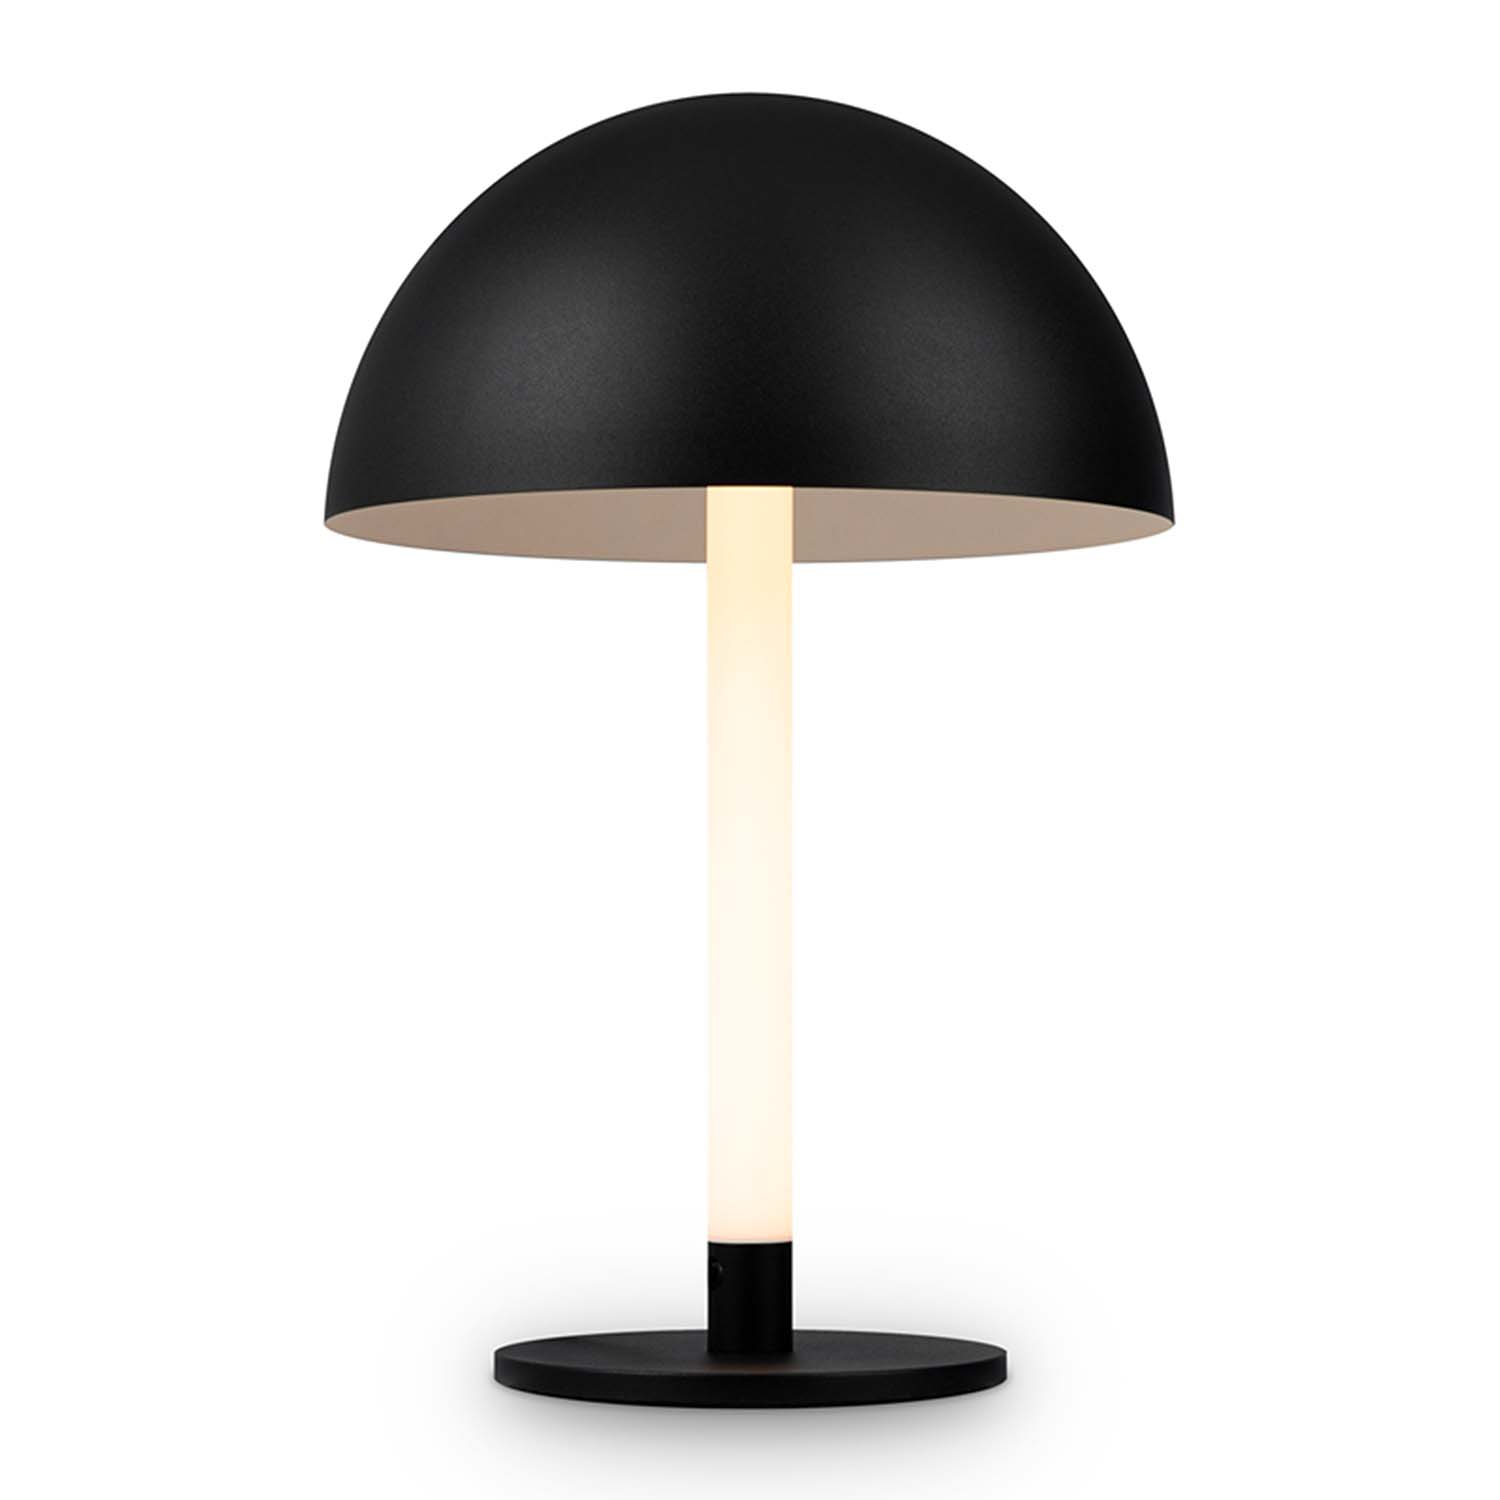 RAY - Lampe de chevet tube LED design et moderne noir